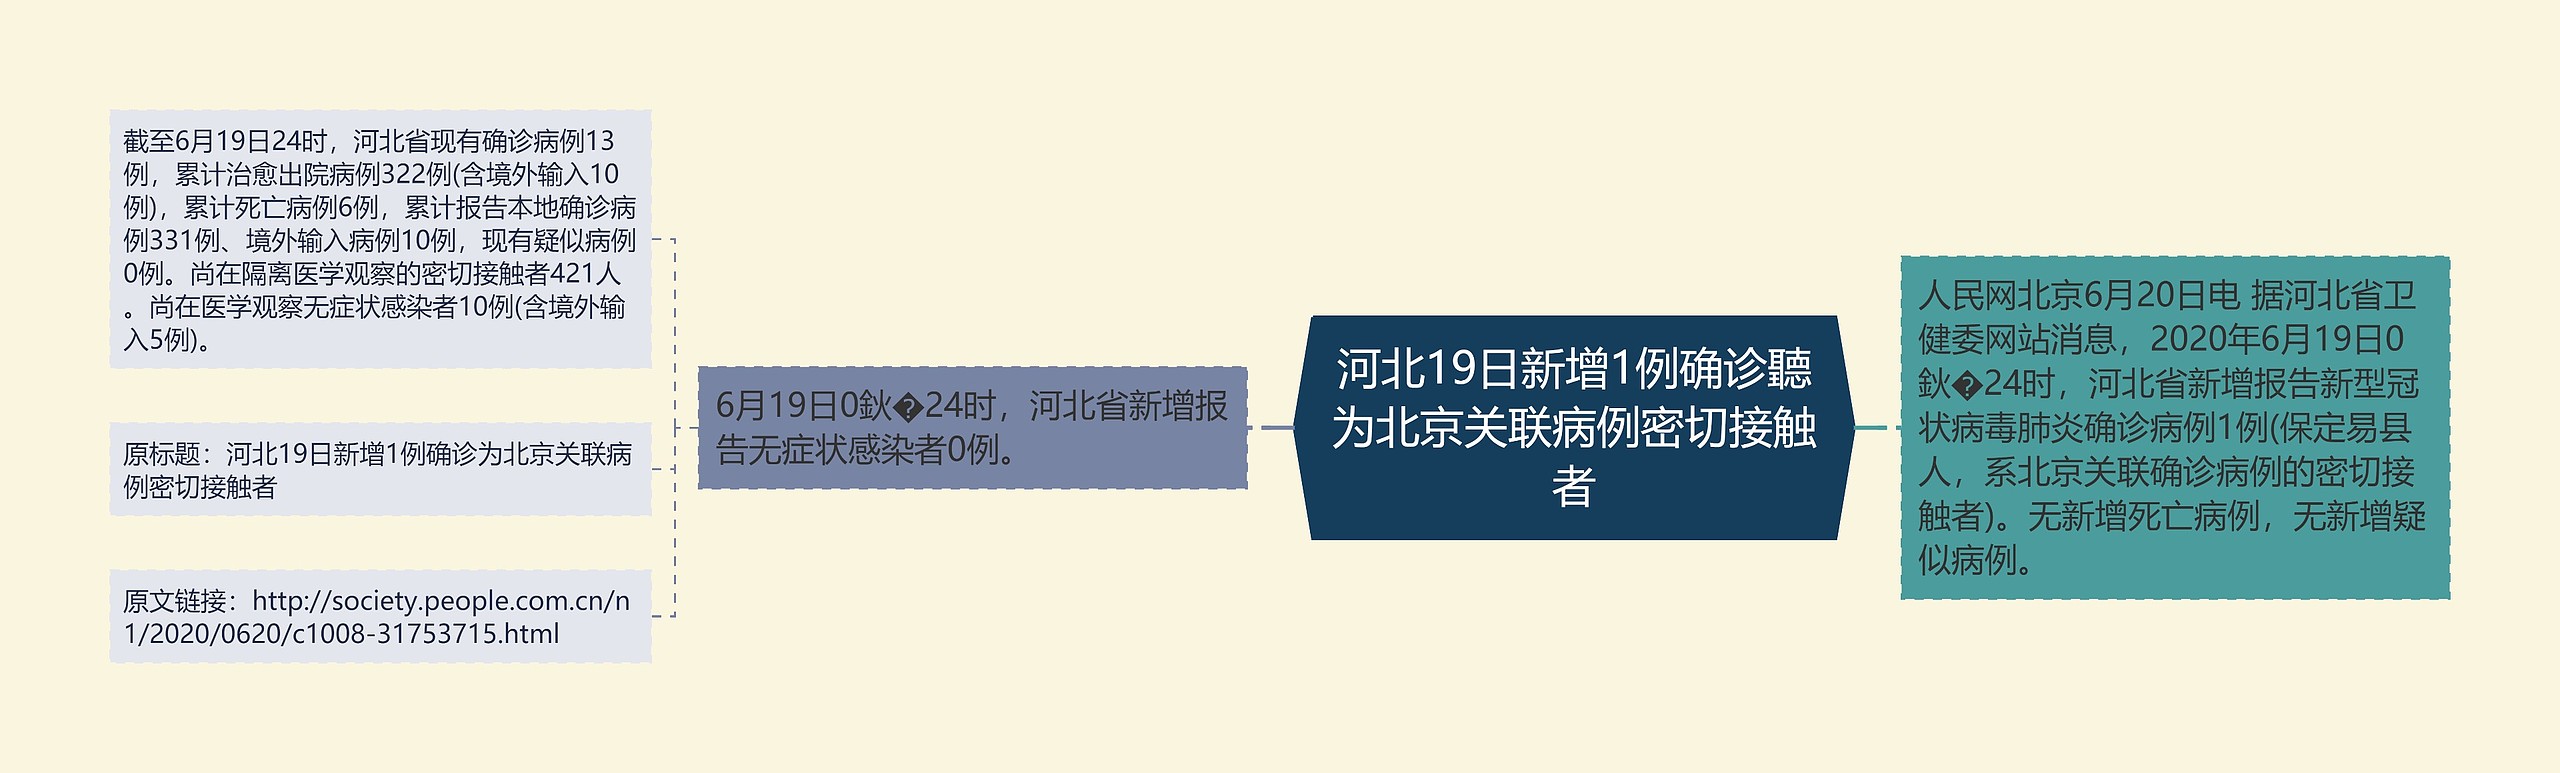 河北19日新增1例确诊聽为北京关联病例密切接触者思维导图